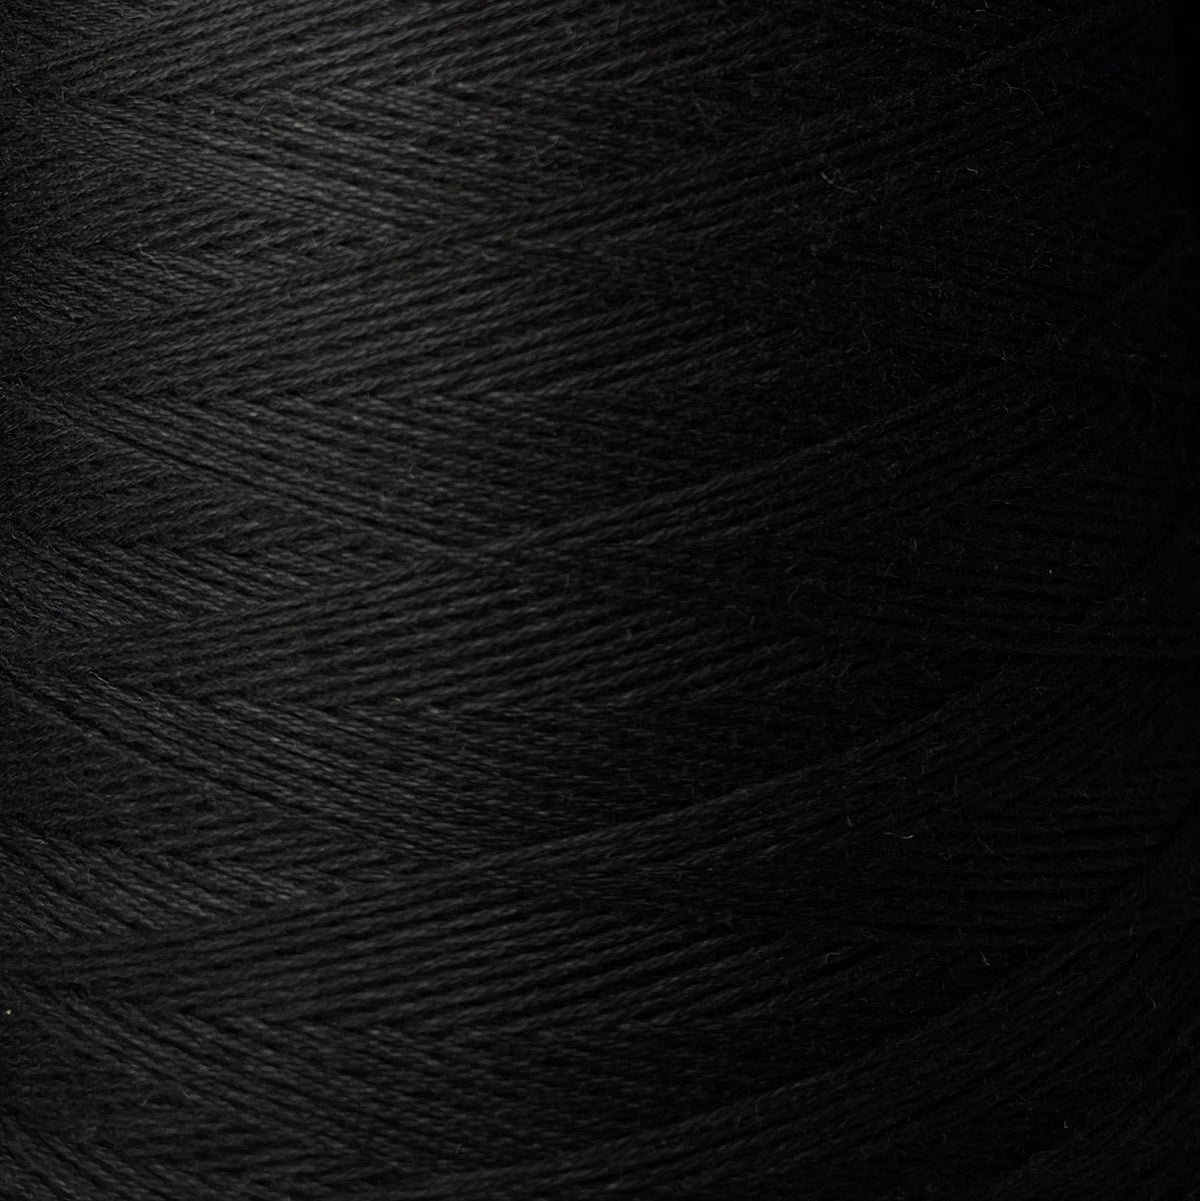 Black Ada Fibres Australian Cotton Weaving Yarn - Australian Made Australian Grown Australian Cotton Aqua